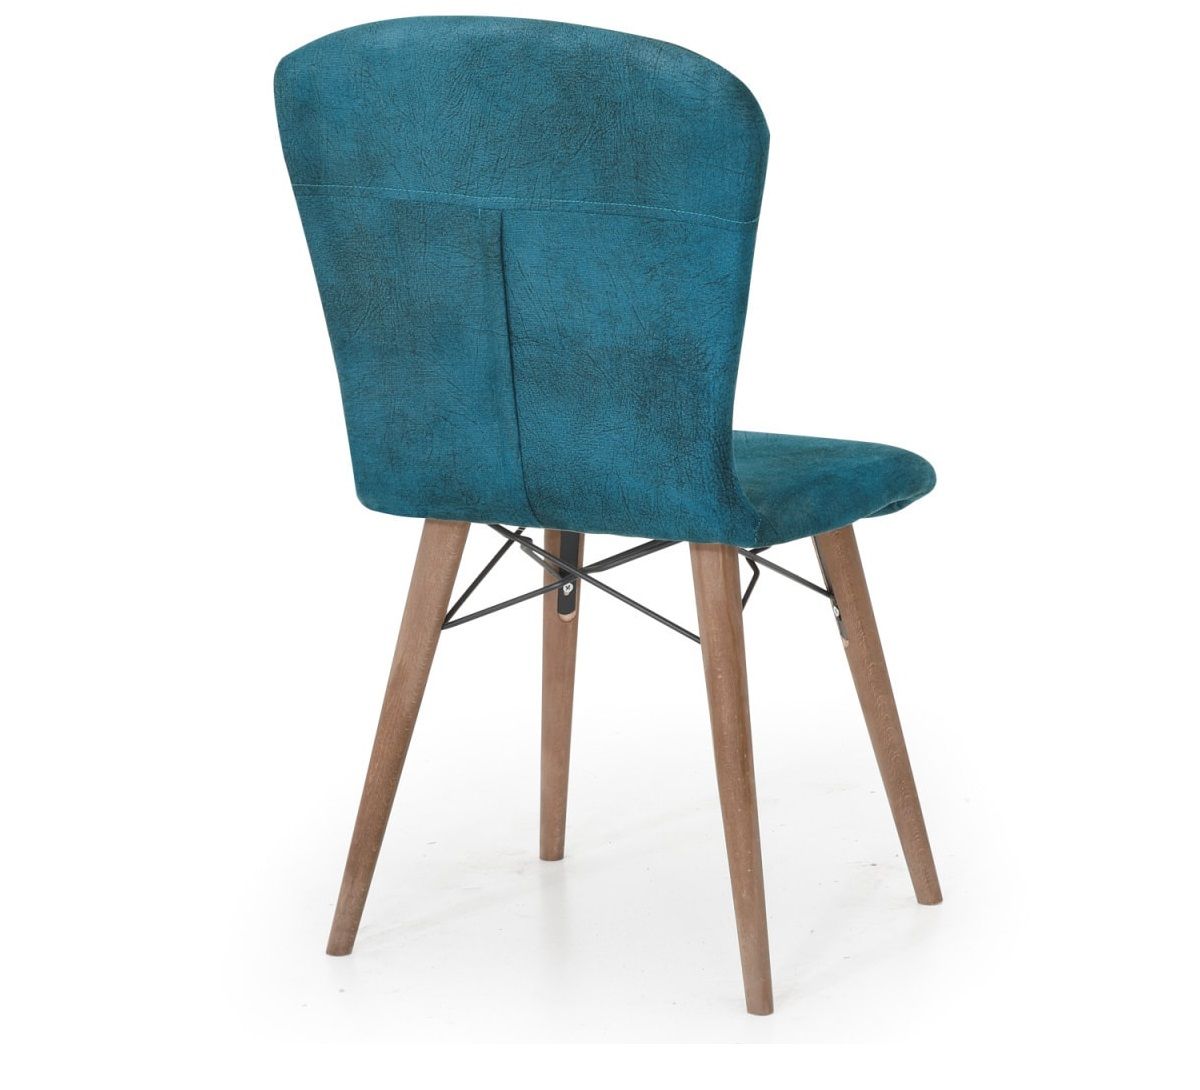 Set masa alba extensibila cu 4 scaune tapitate cobalt blue Homs picioare lemn 110 x 70 cm